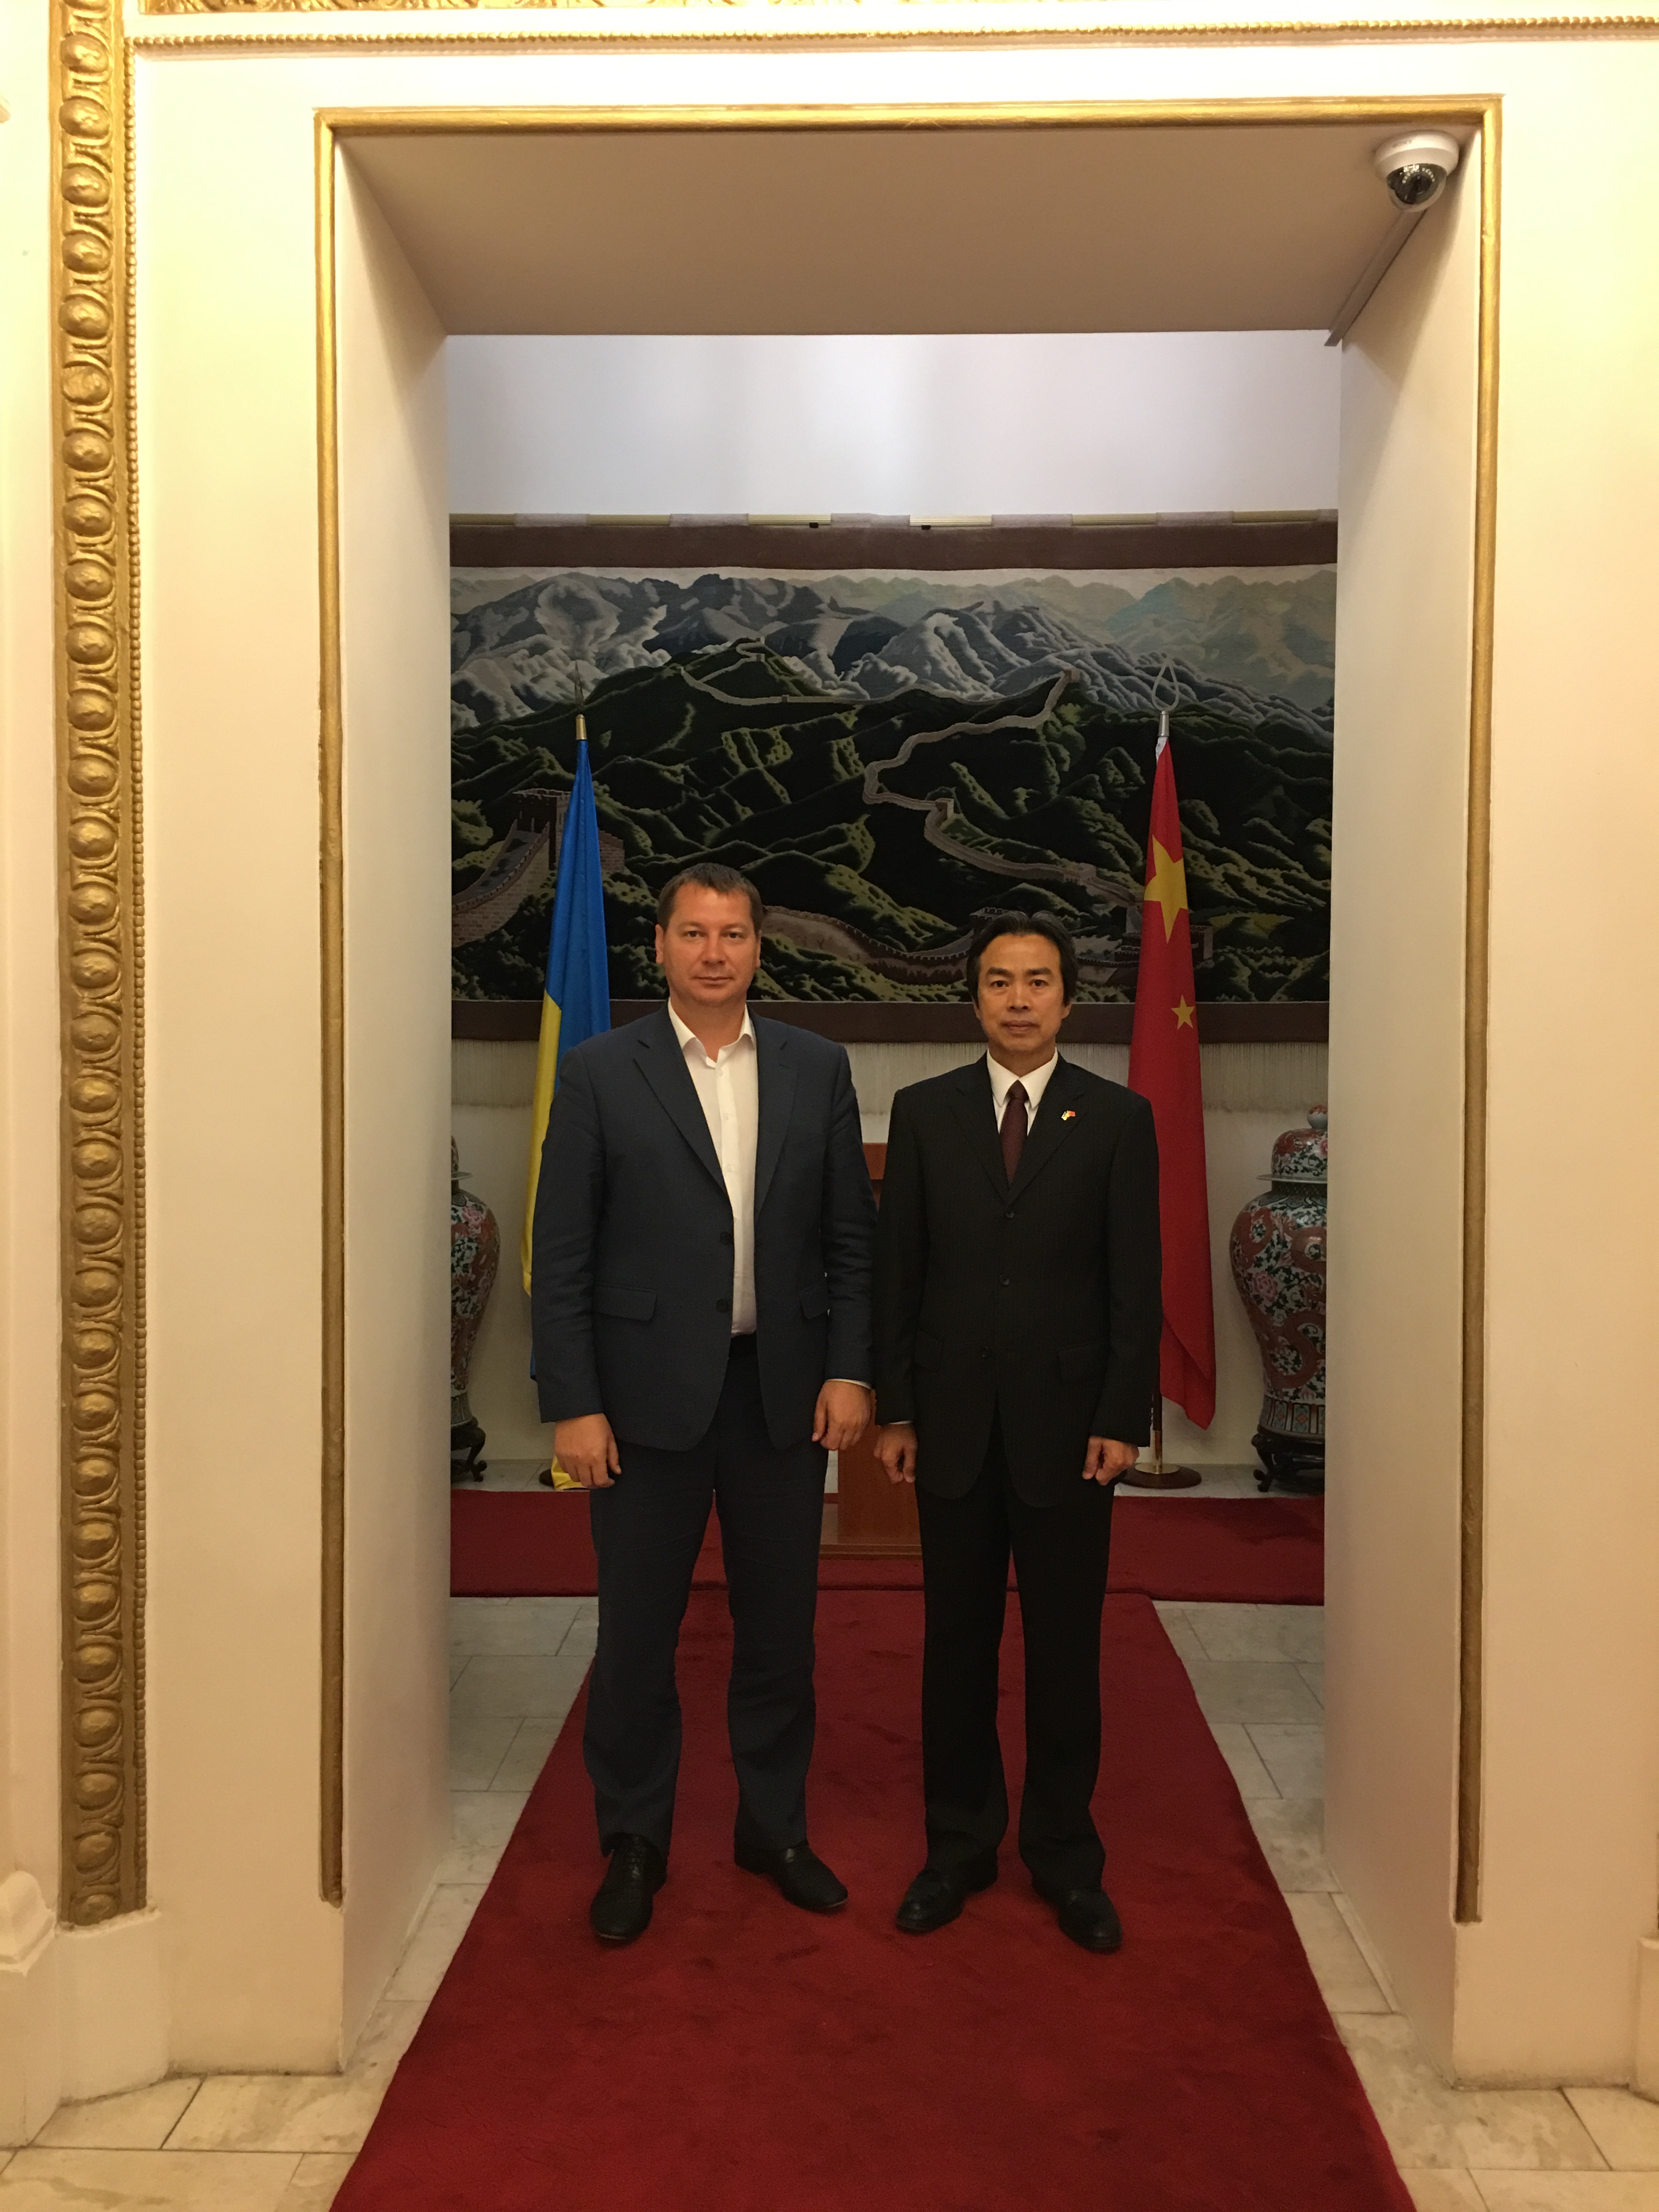 驻乌克兰大使杜伟会见赫尔松州州长戈尔杰耶夫